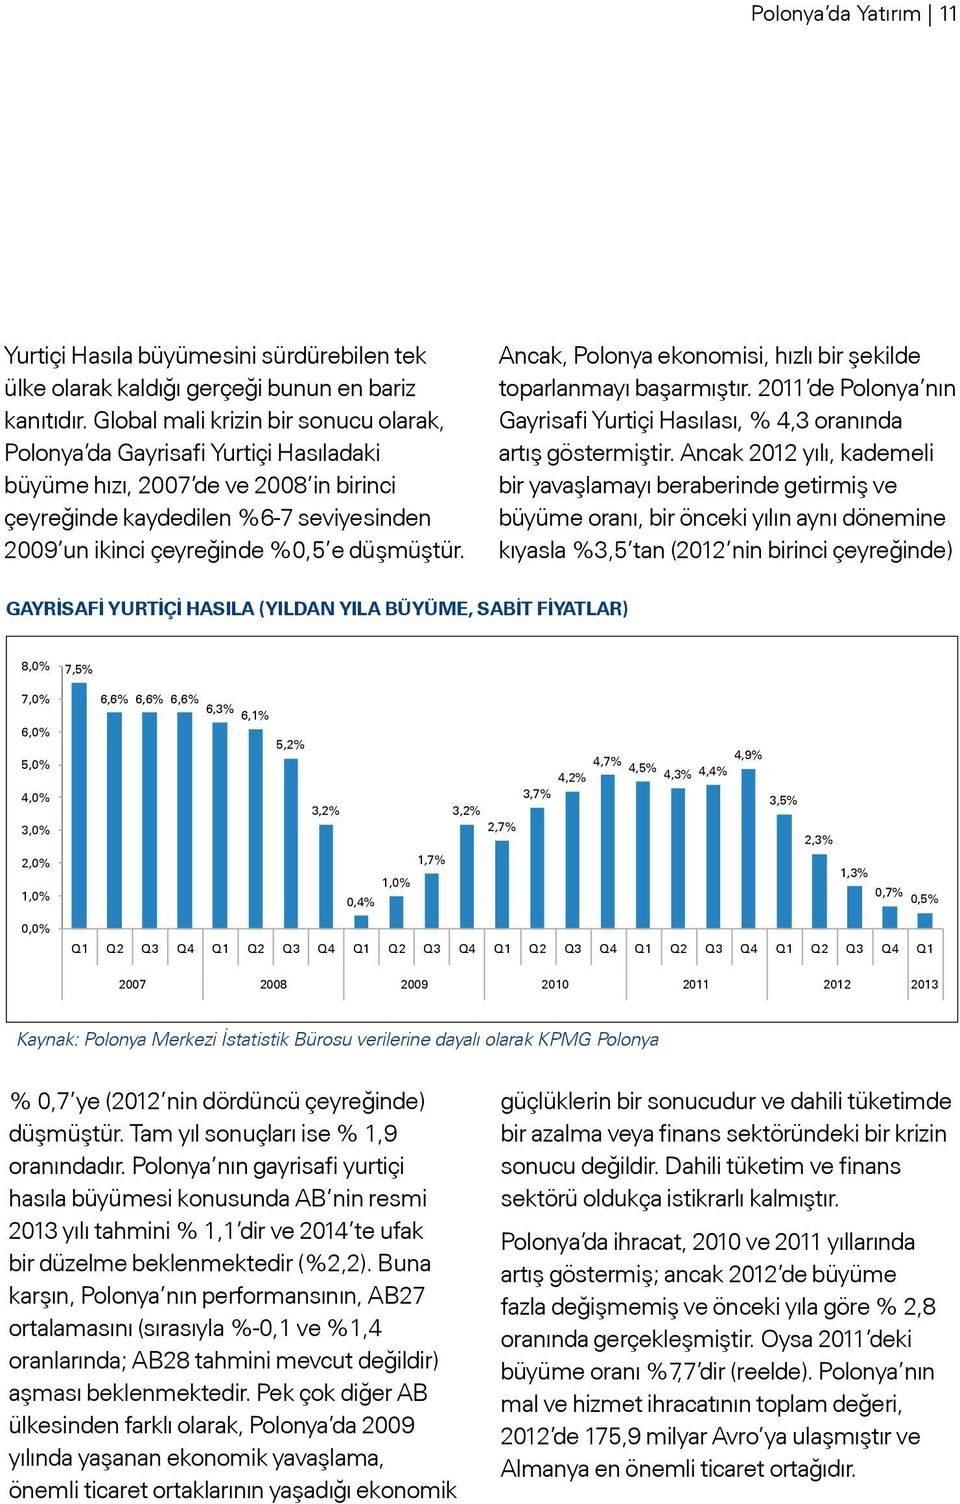 düşmüştür. Ancak, Polonya ekonomisi, hızlı bir şekilde toparlanmayı başarmıştır. 2011 de Polonya nın Gayrisafi Yurtiçi Hasılası, % 4,3 oranında artış göstermiştir.